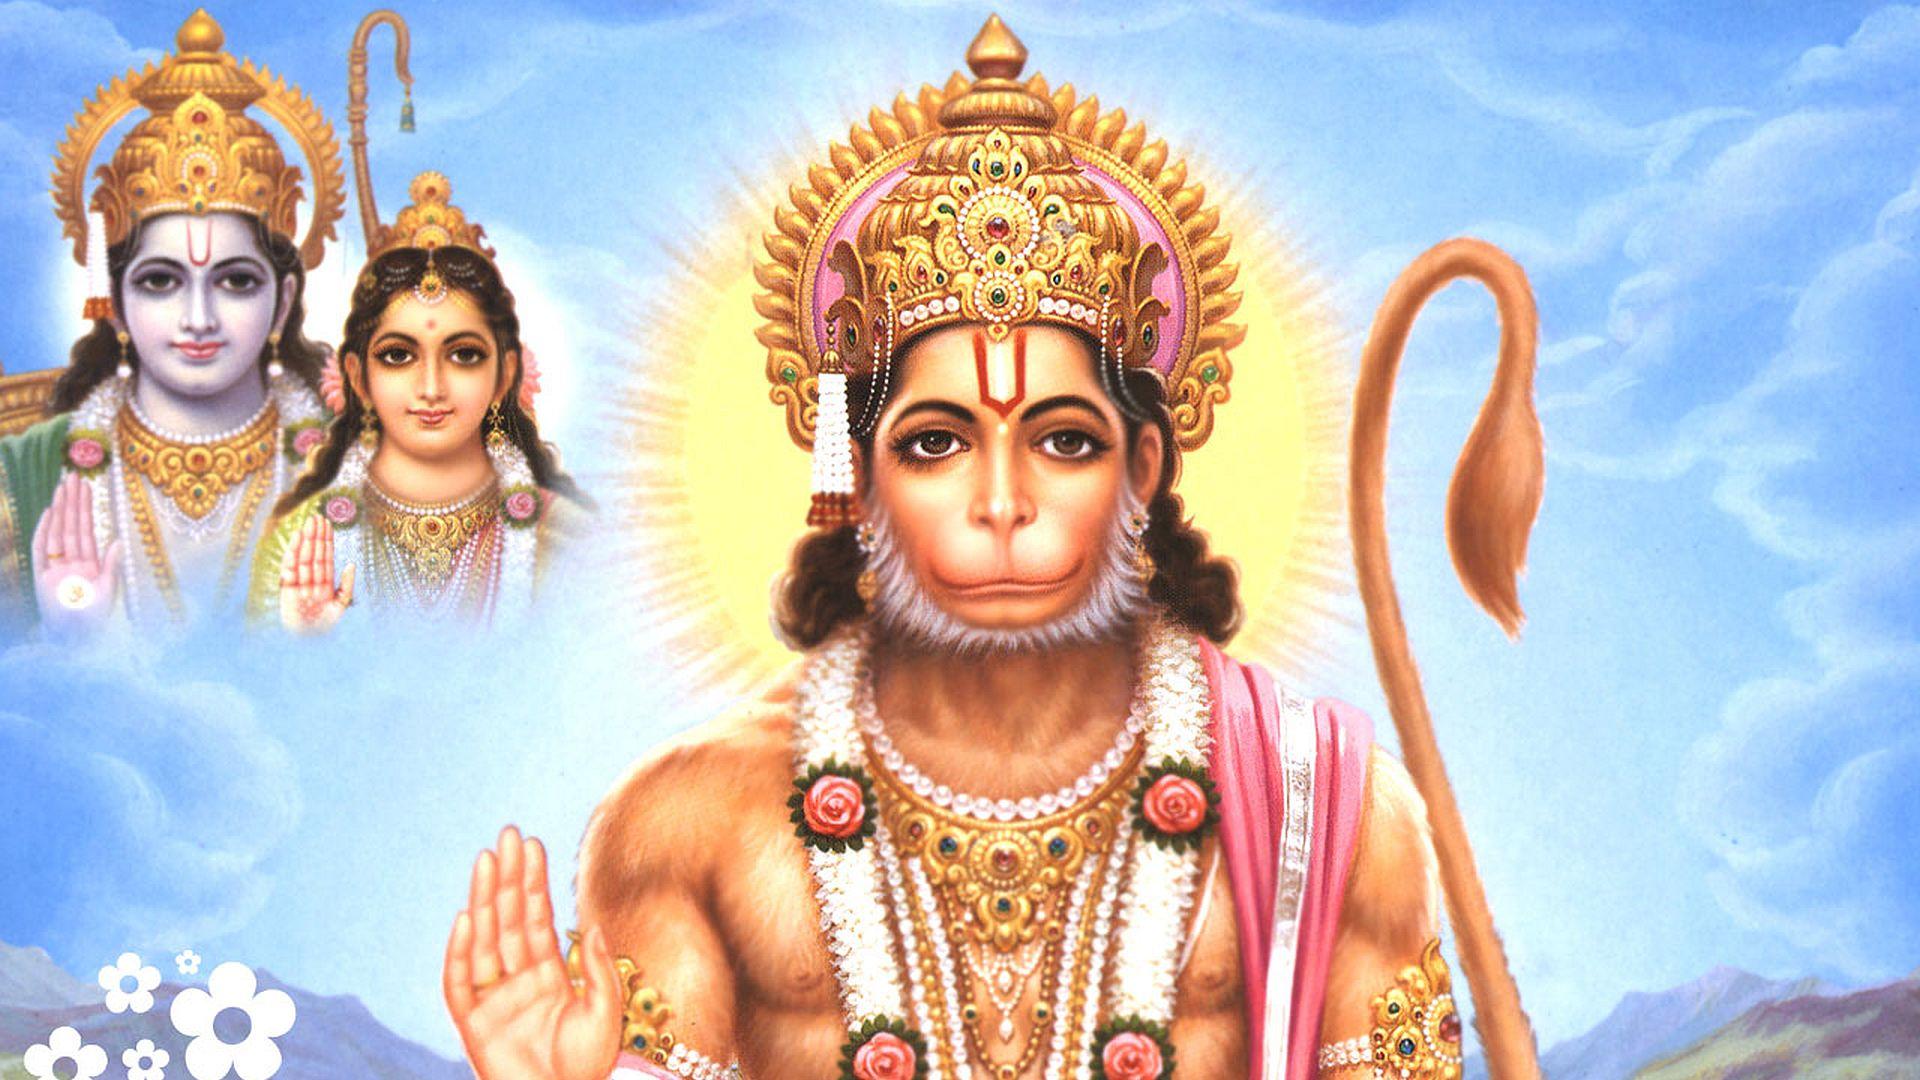 3D God Wallpaper Of Hindu Gods Hanuman Free Wallpaper